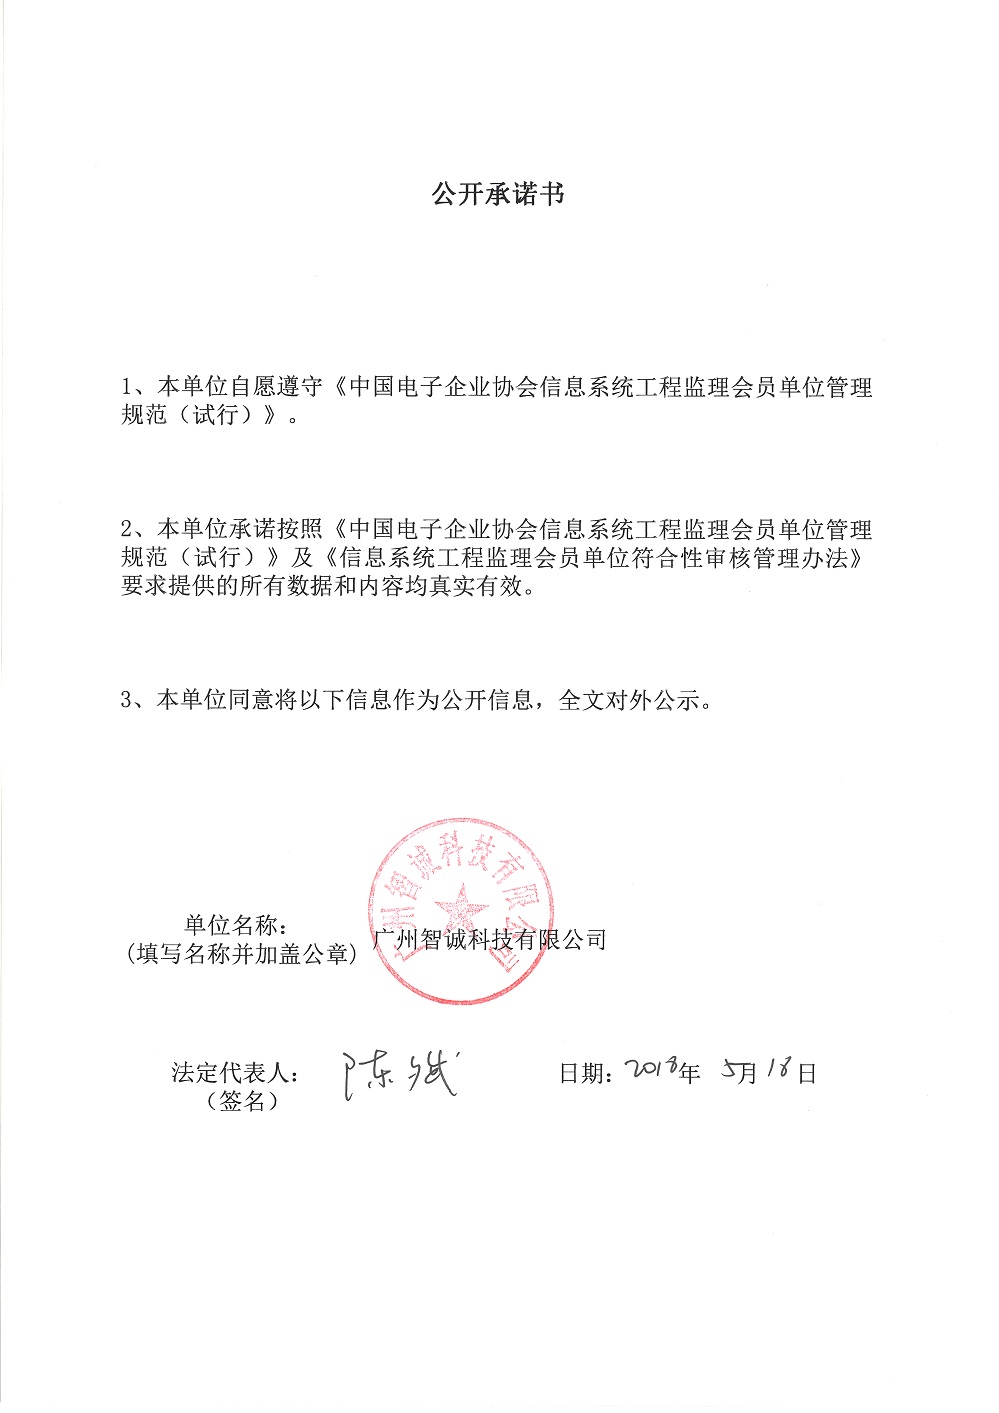 广州智诚科技有限公司信息系统工程监理资质证书